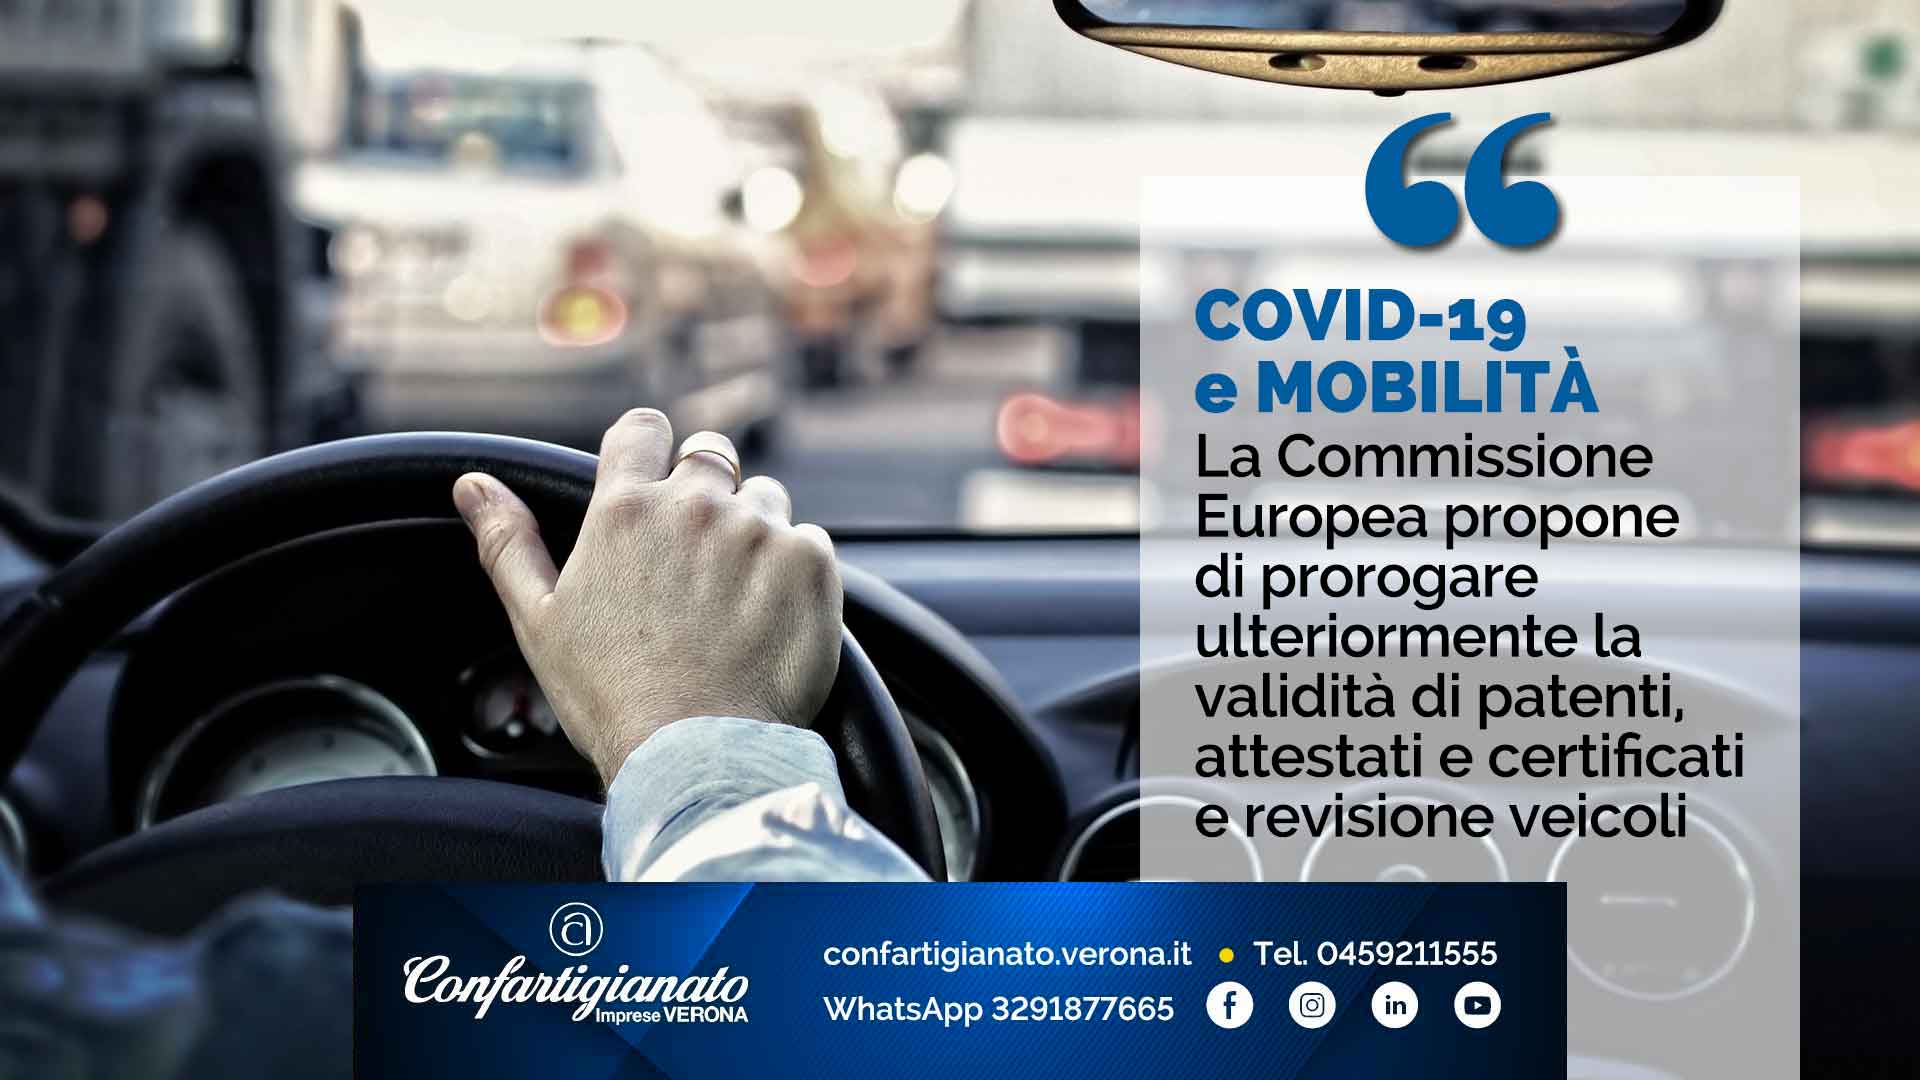 COVID-19 e MOBILITA' – Commissione Europea propone ulteriore proroga validità patenti, attestati, certificati e revisione veicoli